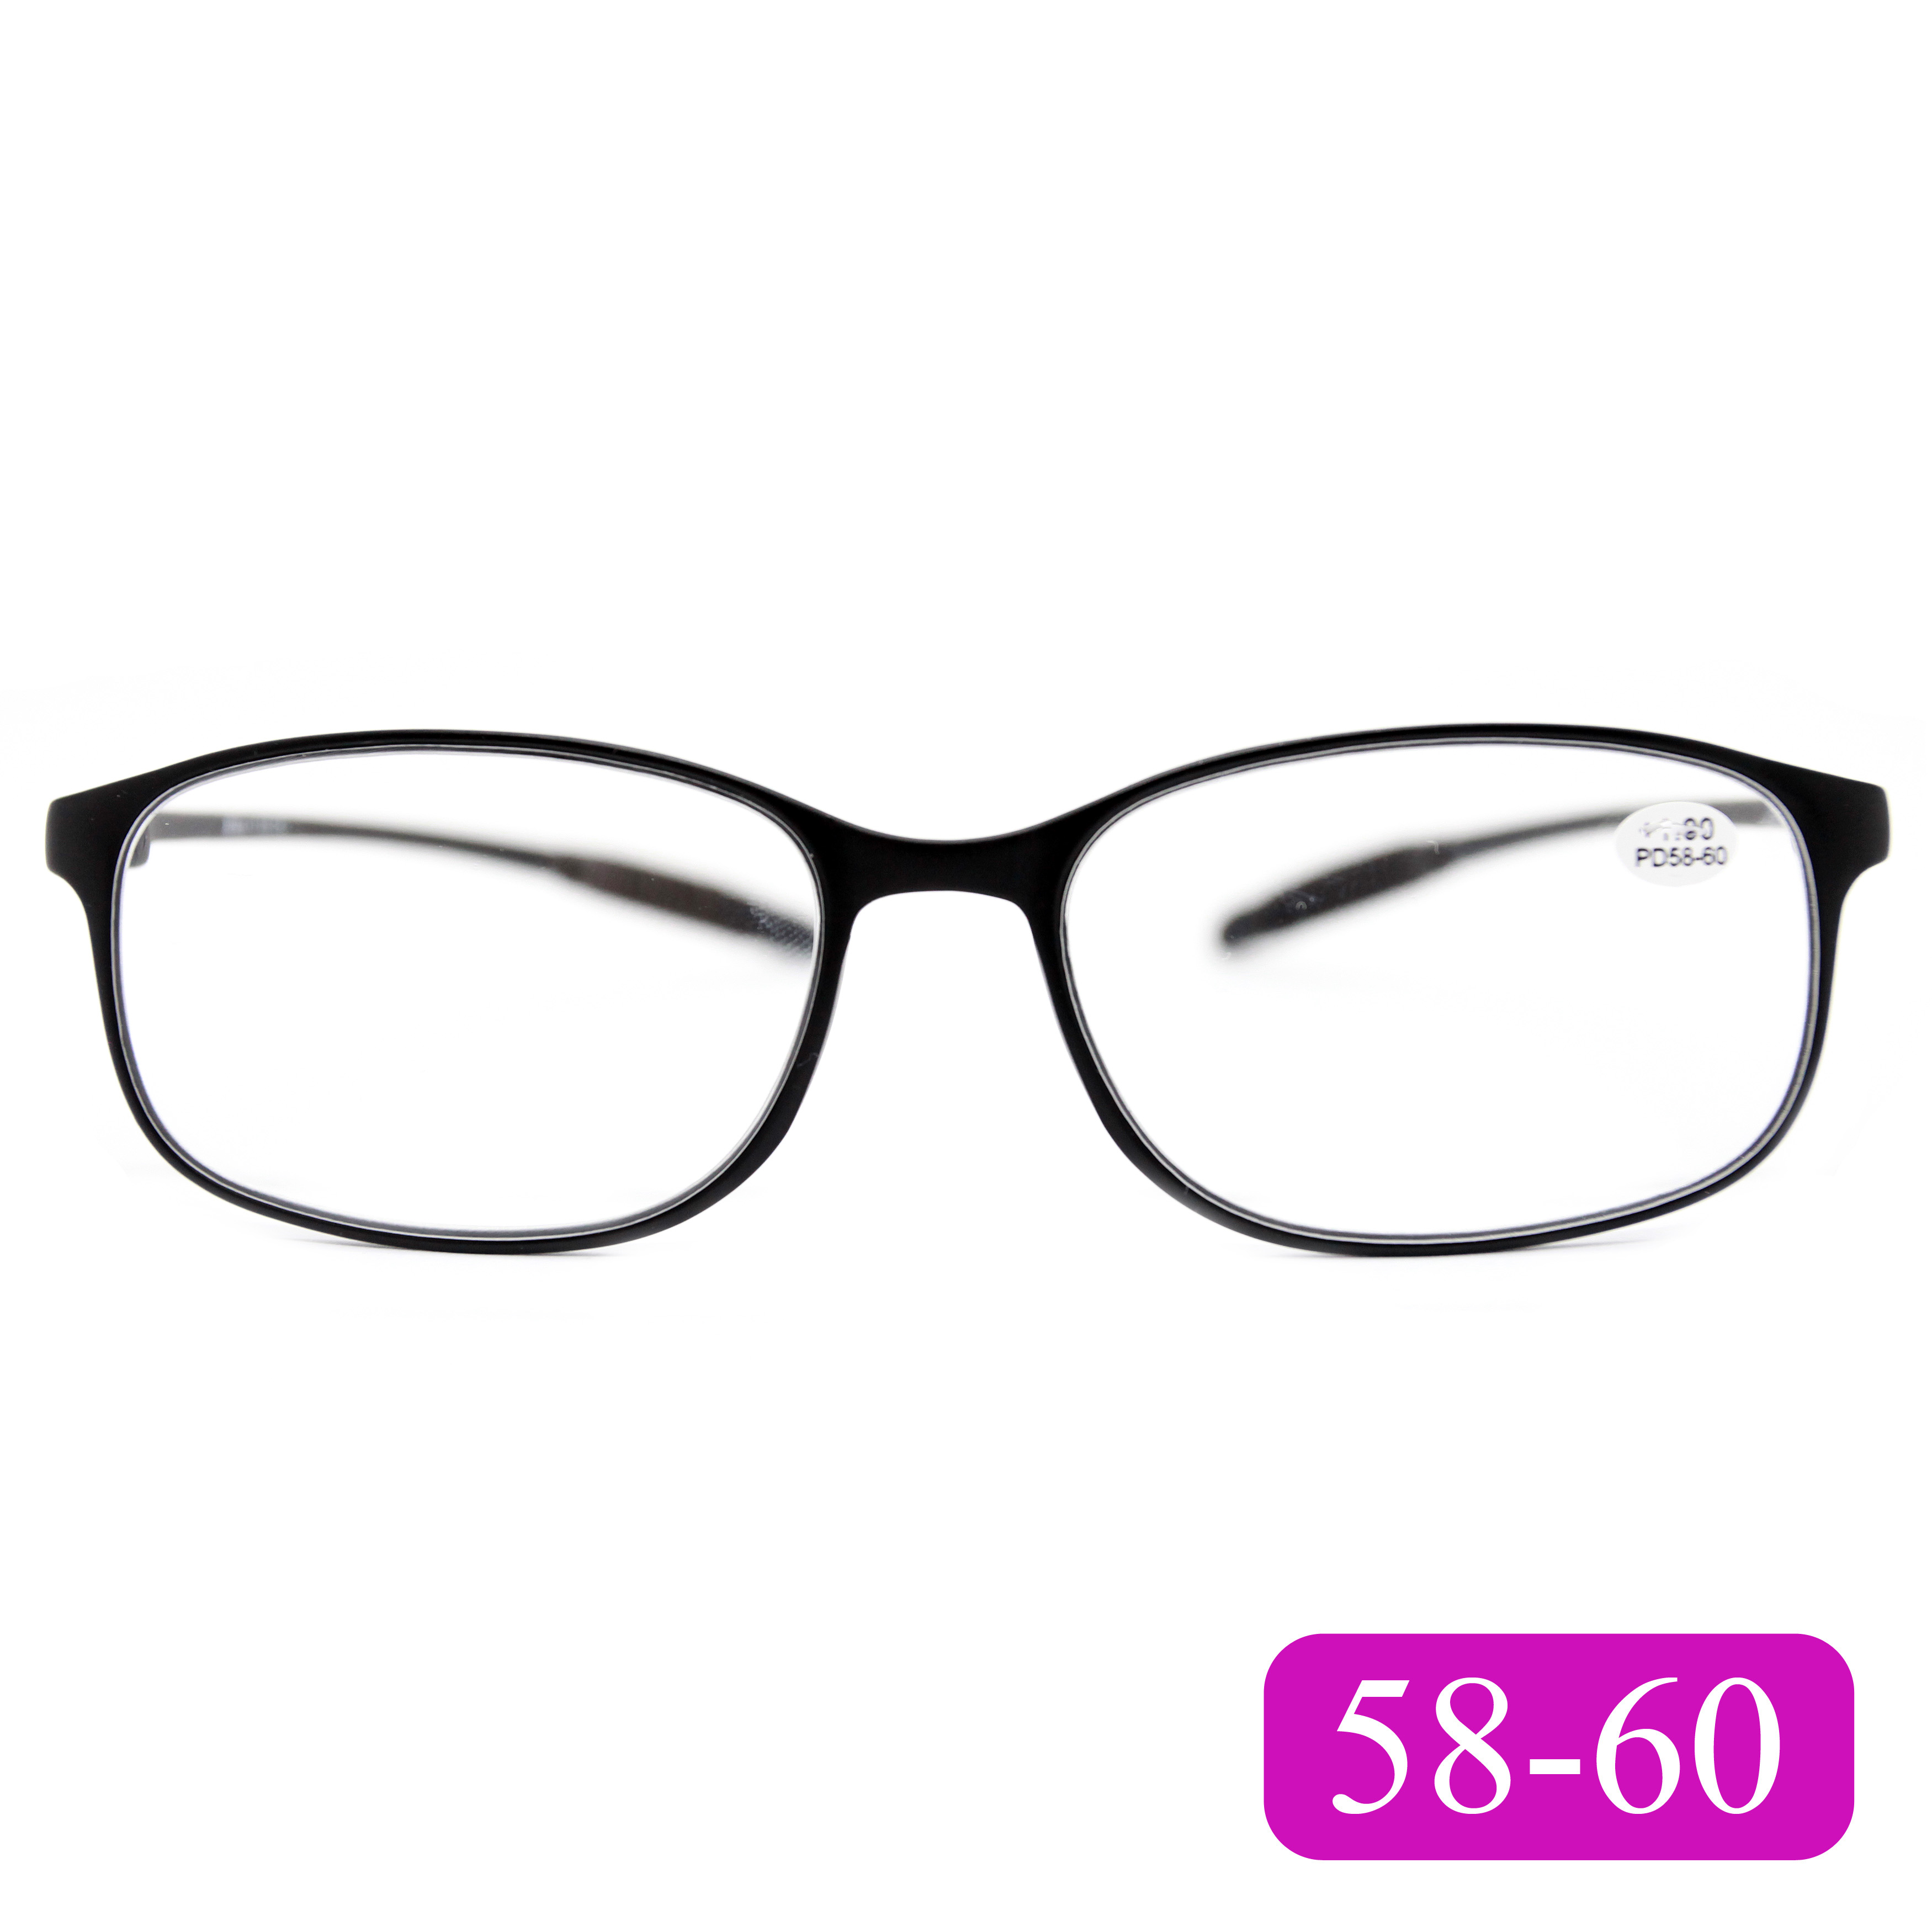 Готовые очки карбоновые TR259 +2,75, для чтения, без футляра, черный, РЦ 58-60